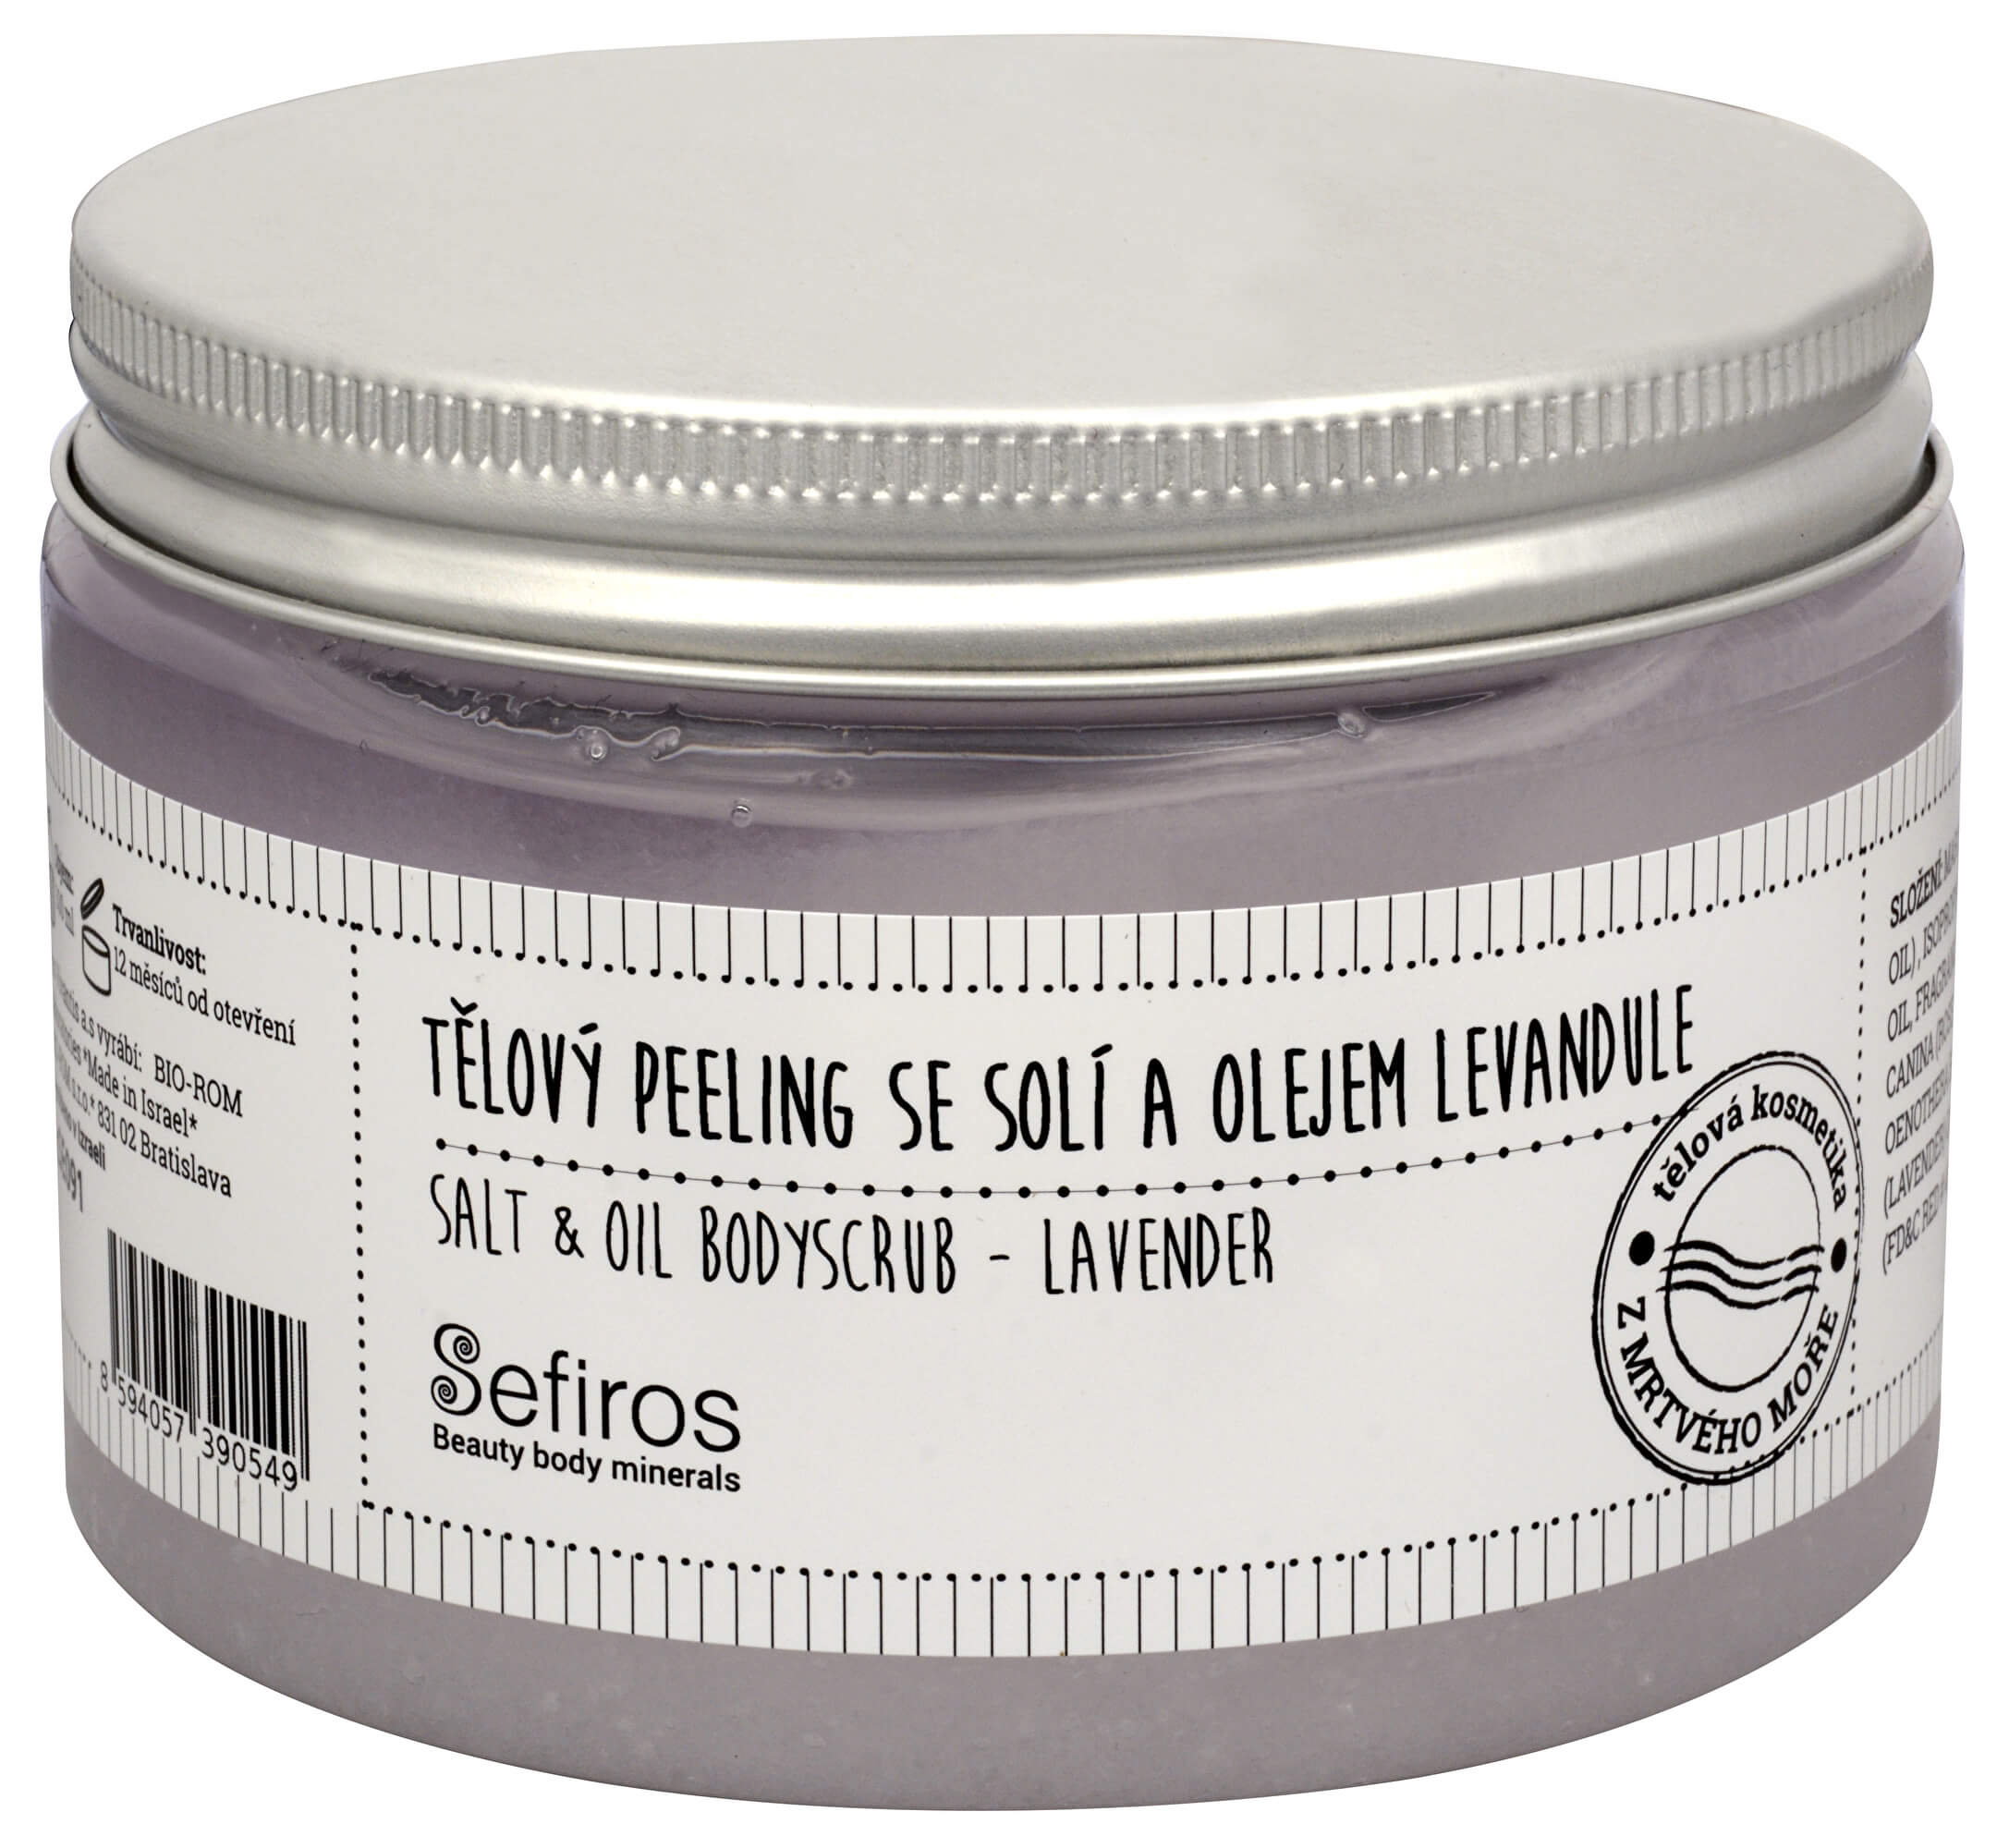 Zobrazit detail výrobku Sefiross Tělový peeling se solí a olejem Levandule (Salt & Oil Bodyscrub) 300 ml